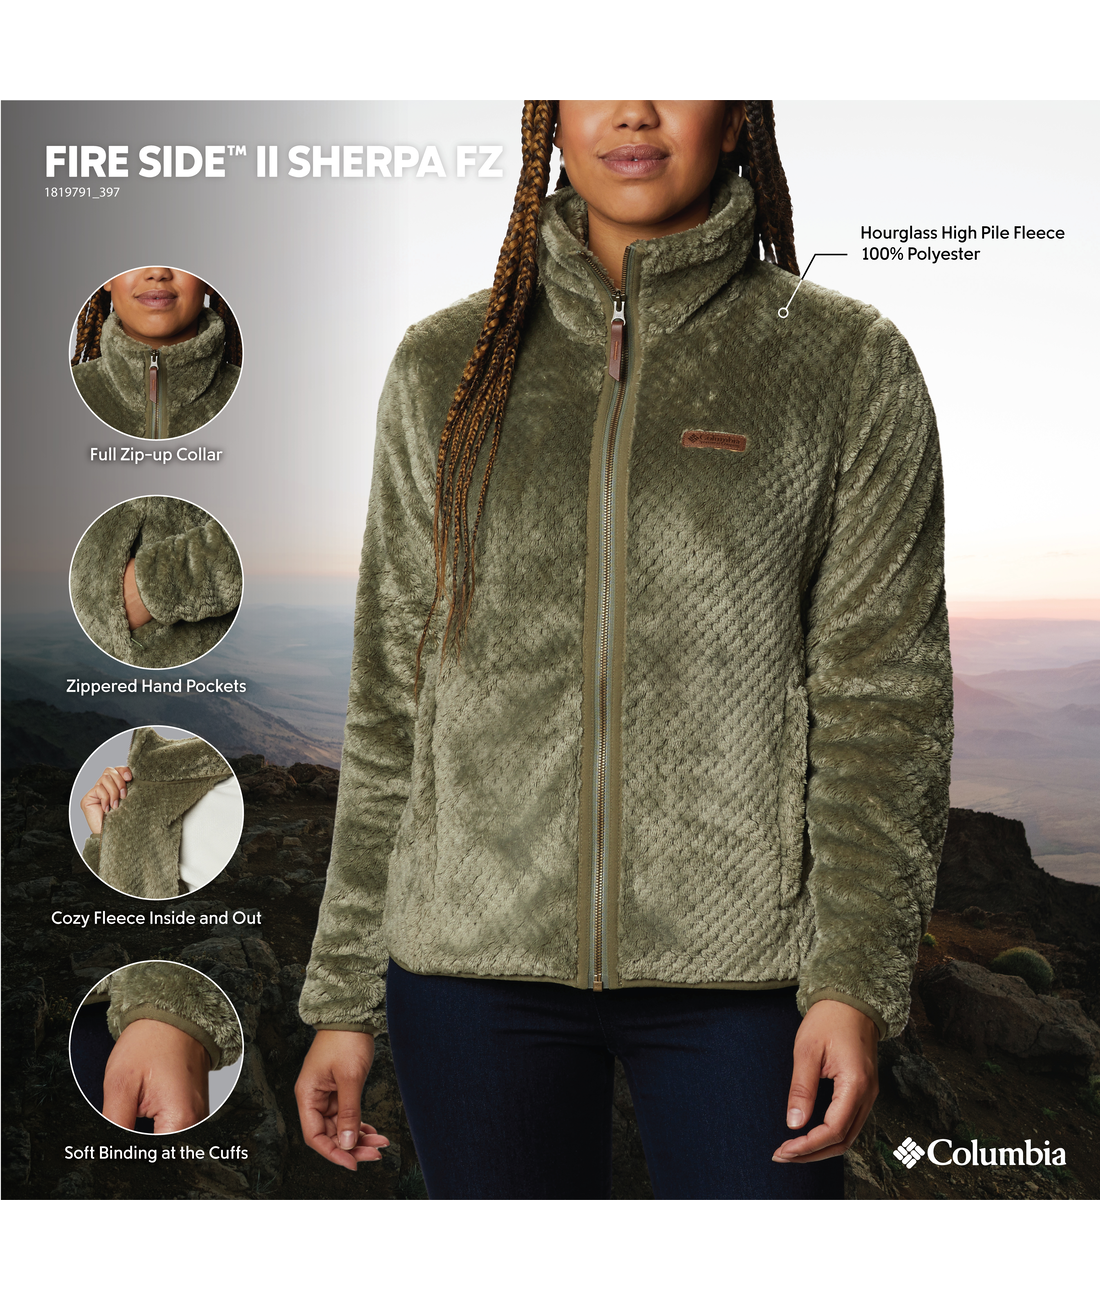 Fire Side II Sherpa FZ